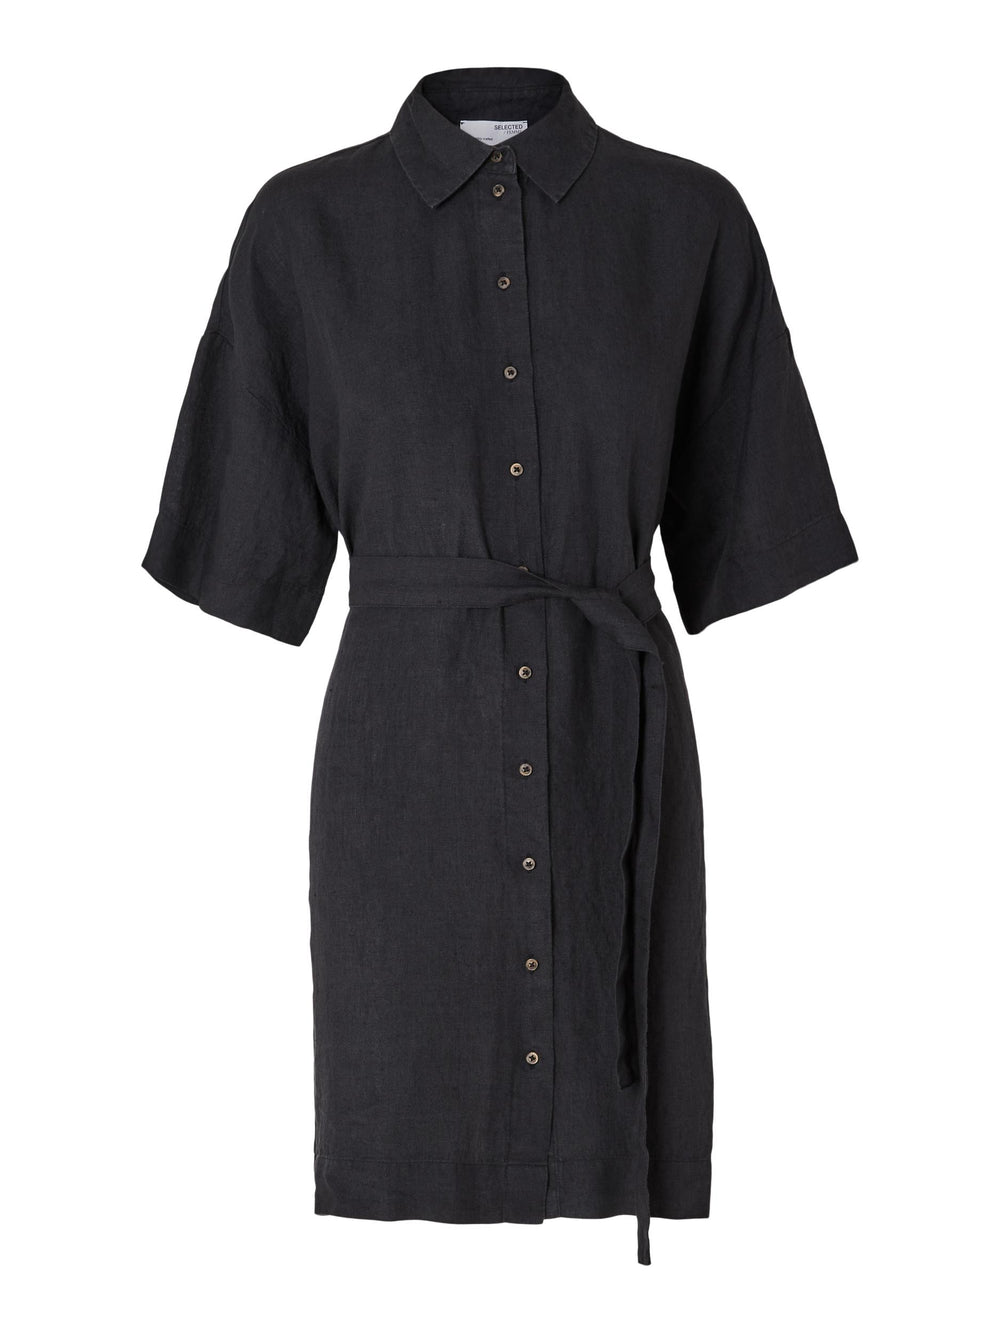 SLFLINNIE Black Short Linen Dress